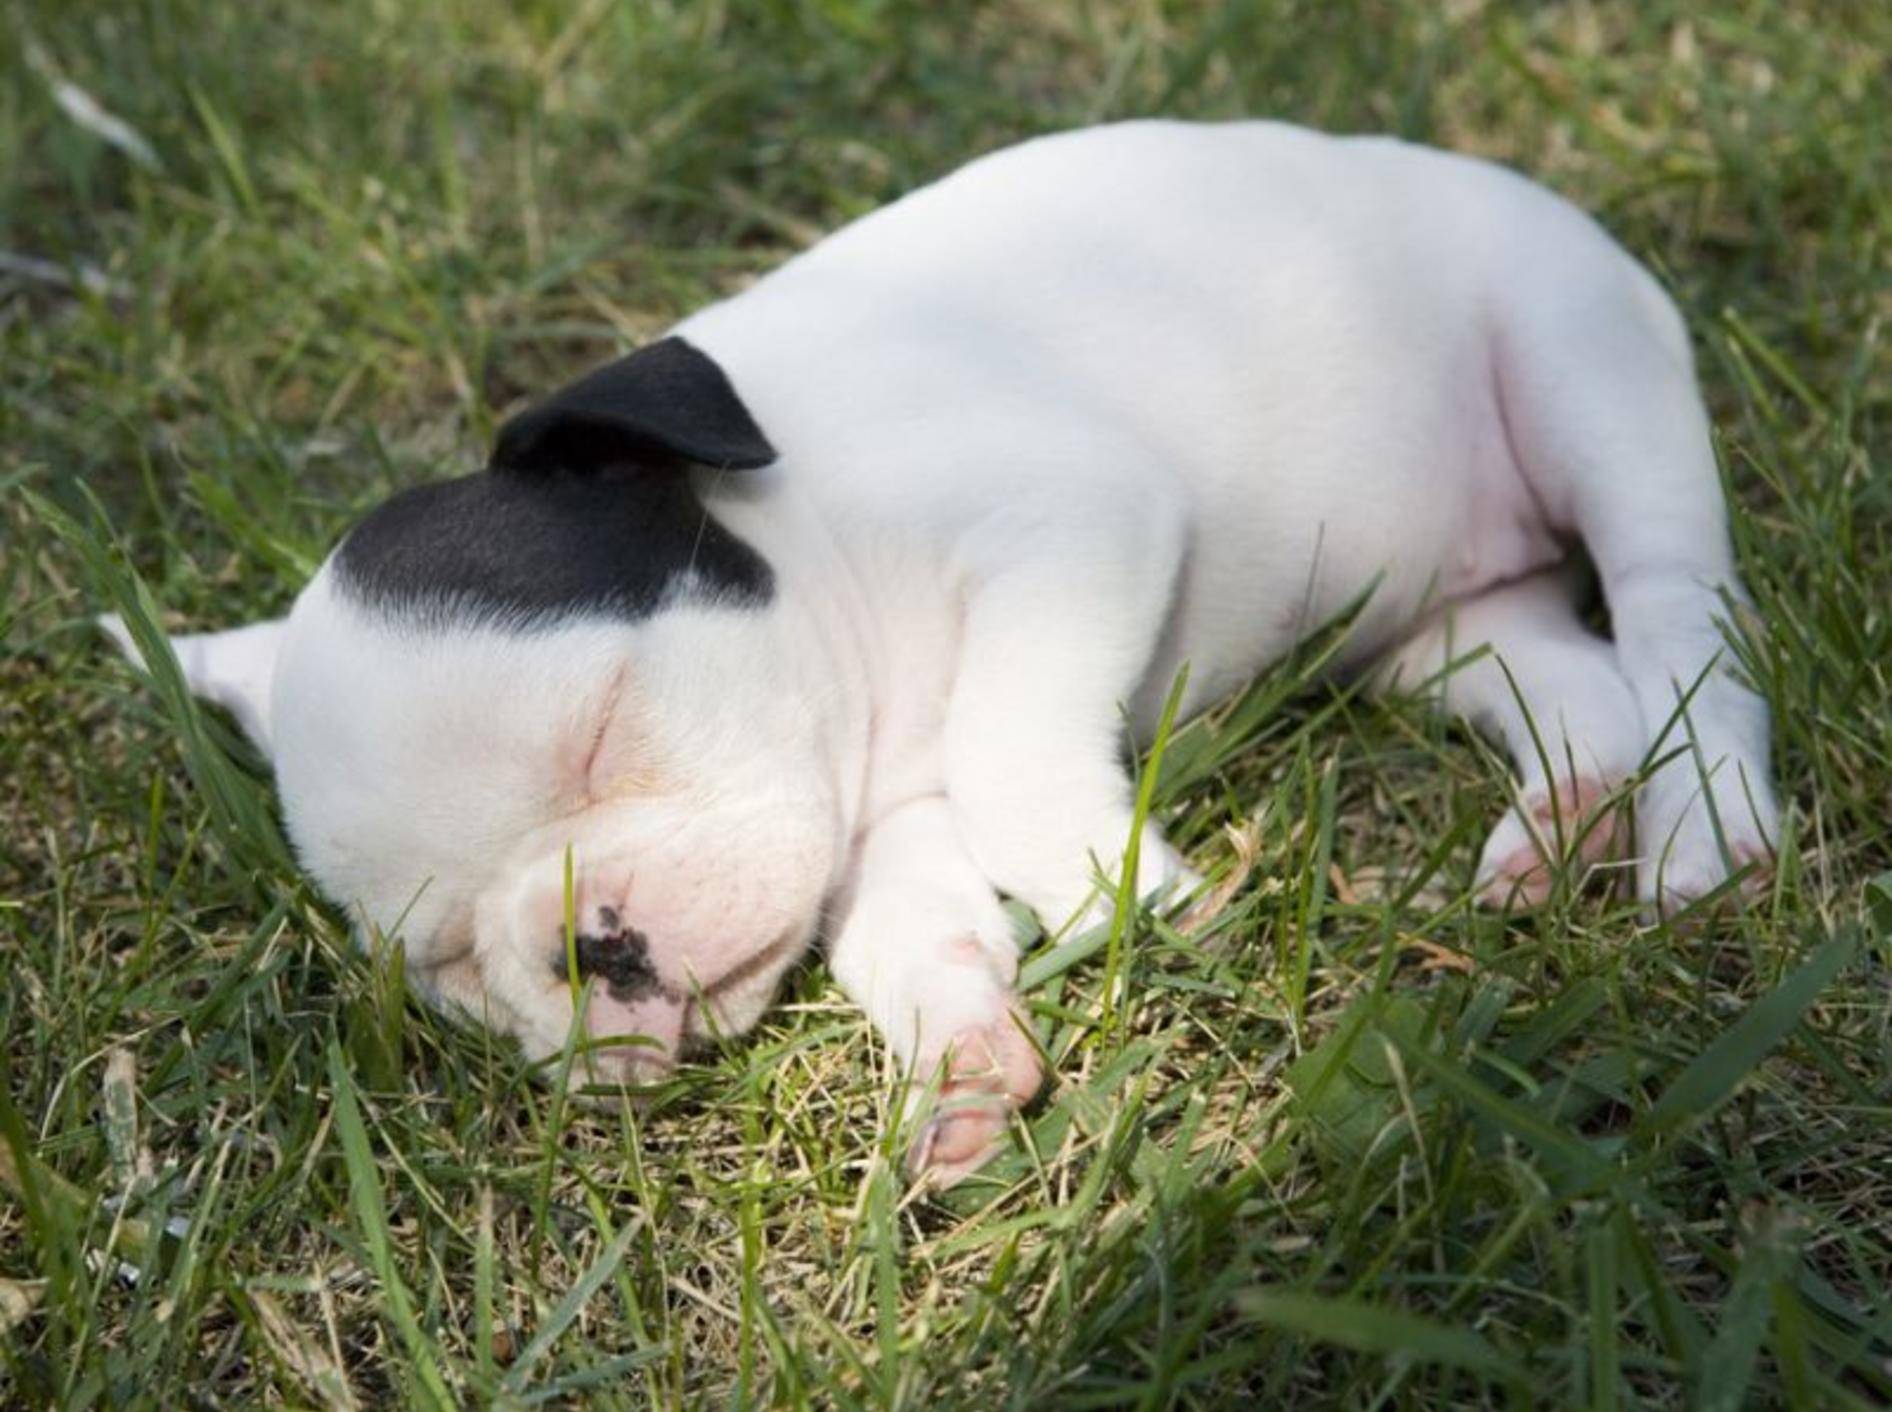 Willkommen auf der Welt: Diese kleine Französische Bulldoge ist erst wenige Wochen alt – Bild: Shutterstock / Robynrg